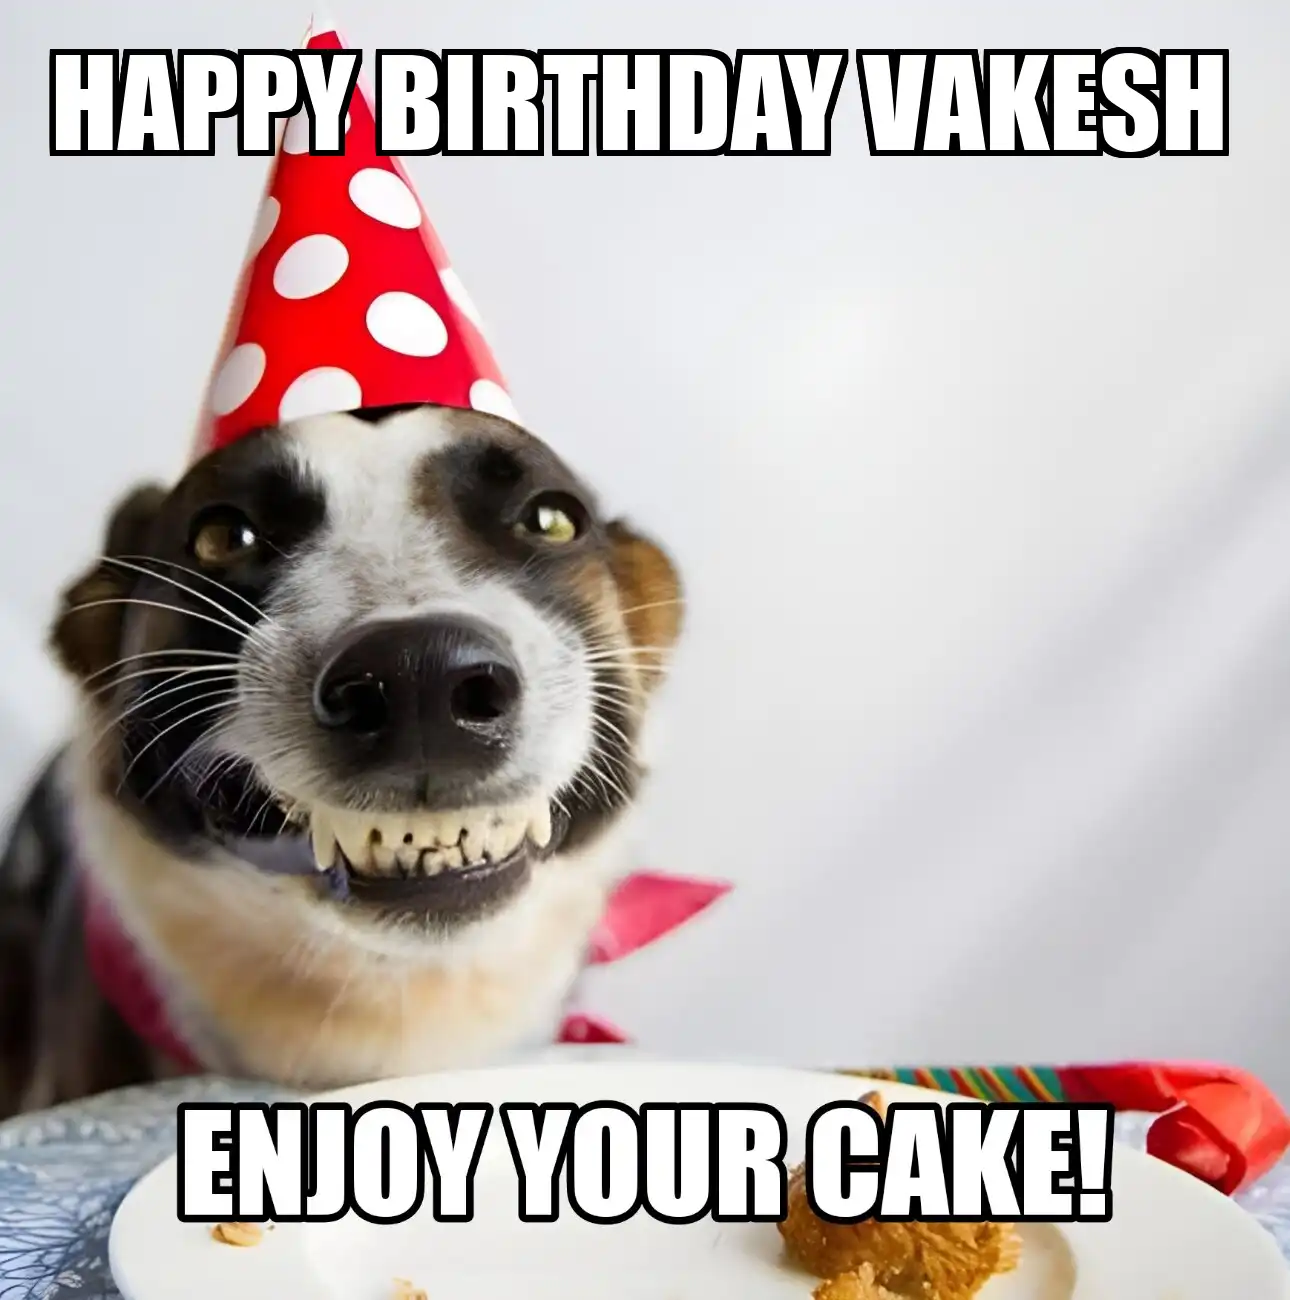 Happy Birthday Vakesh Enjoy Your Cake Dog Meme